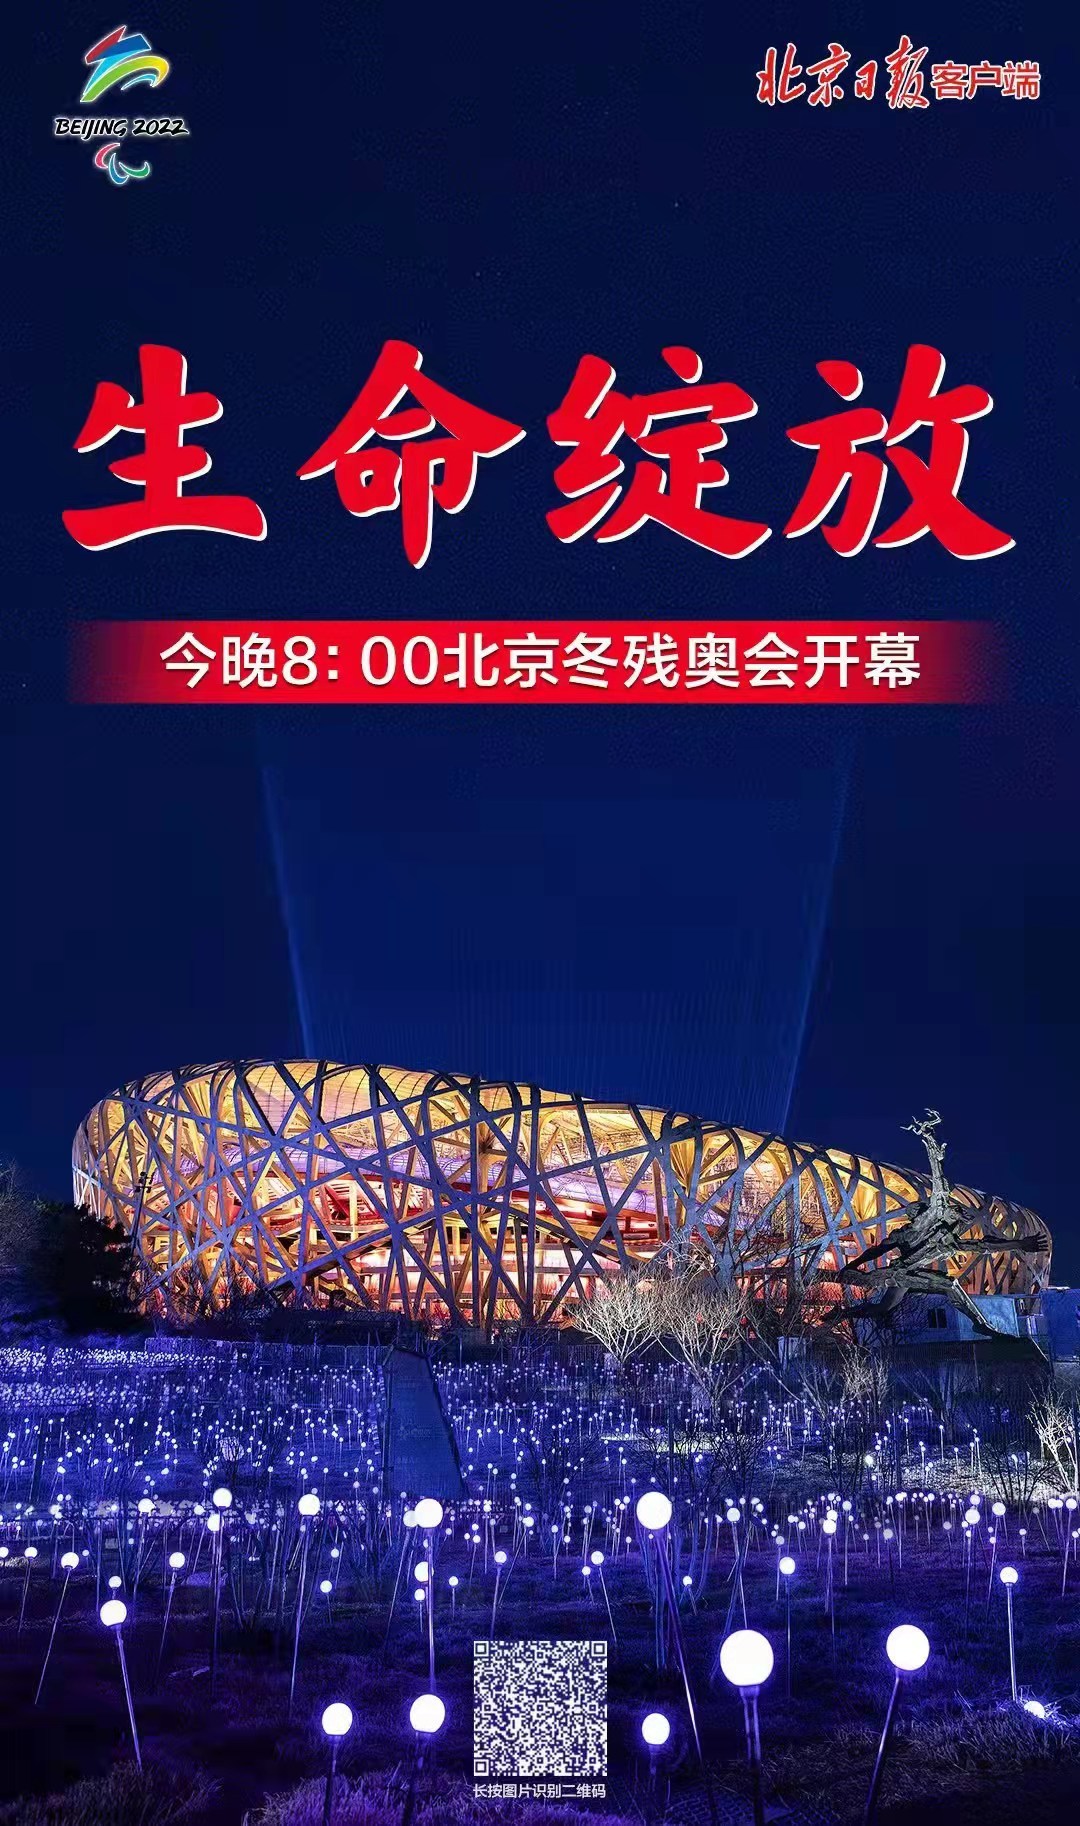 北京2022年冬残奥会开幕式3月4日晚8:00在国家体育场举行